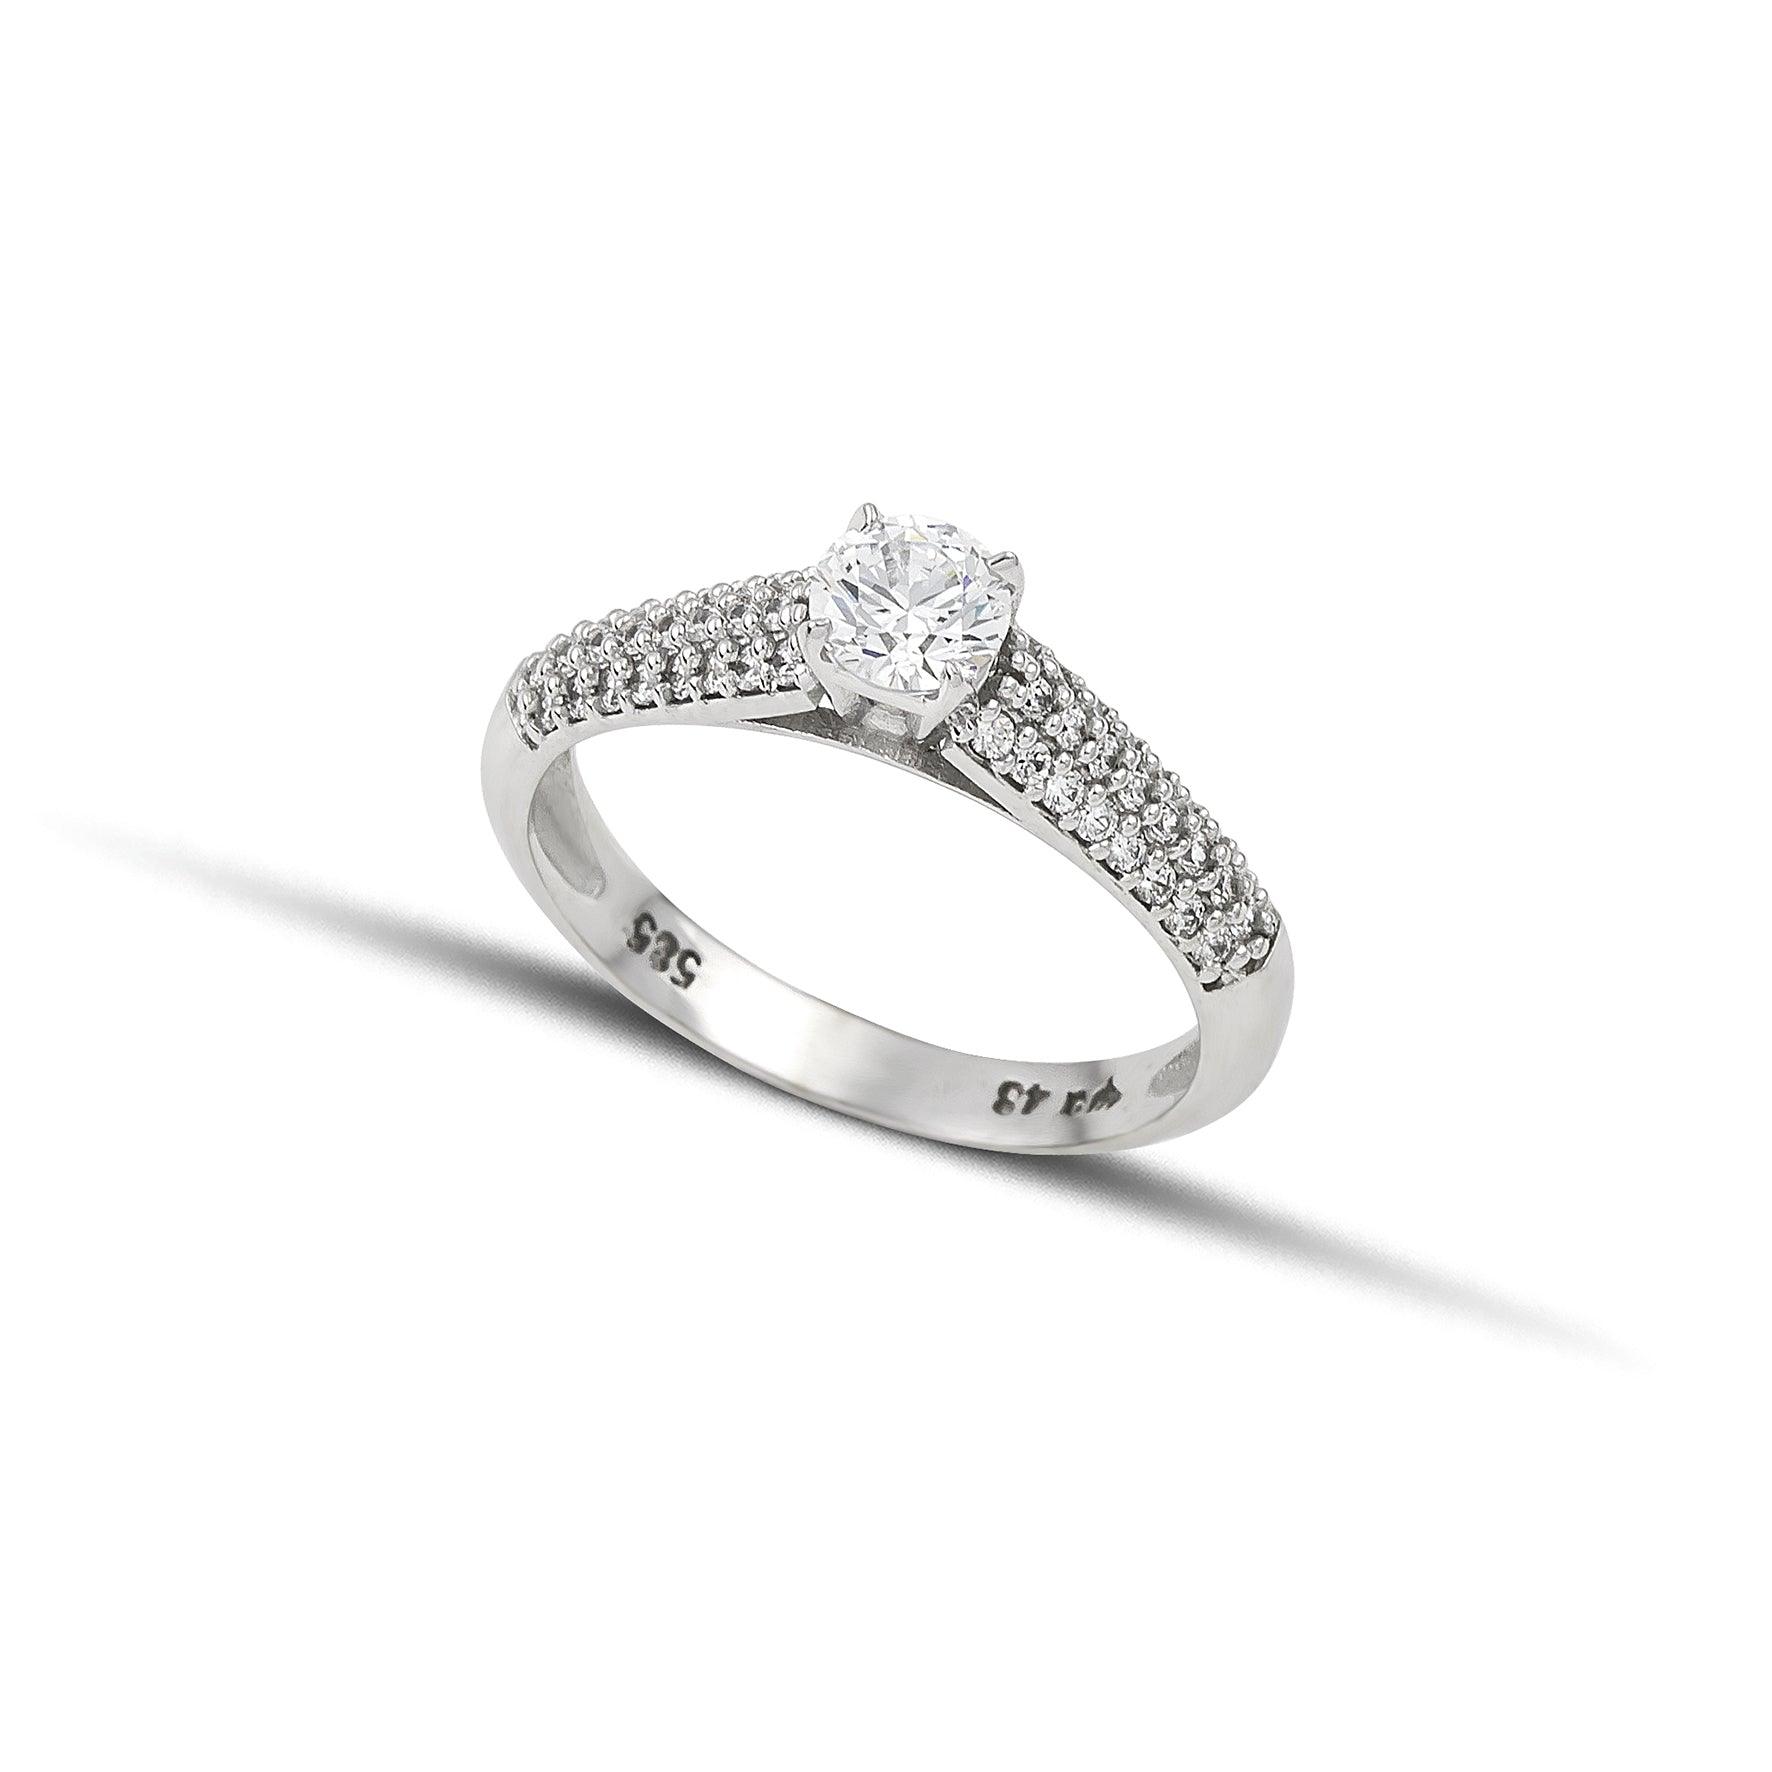 Μονόπετρο δαχτυλίδι με κεντρικό διαμάντι round cut και πλαϊνές πέτρες από μικρότερα διαμάντια, κατασκευασμένο από λευκόχρυσο.